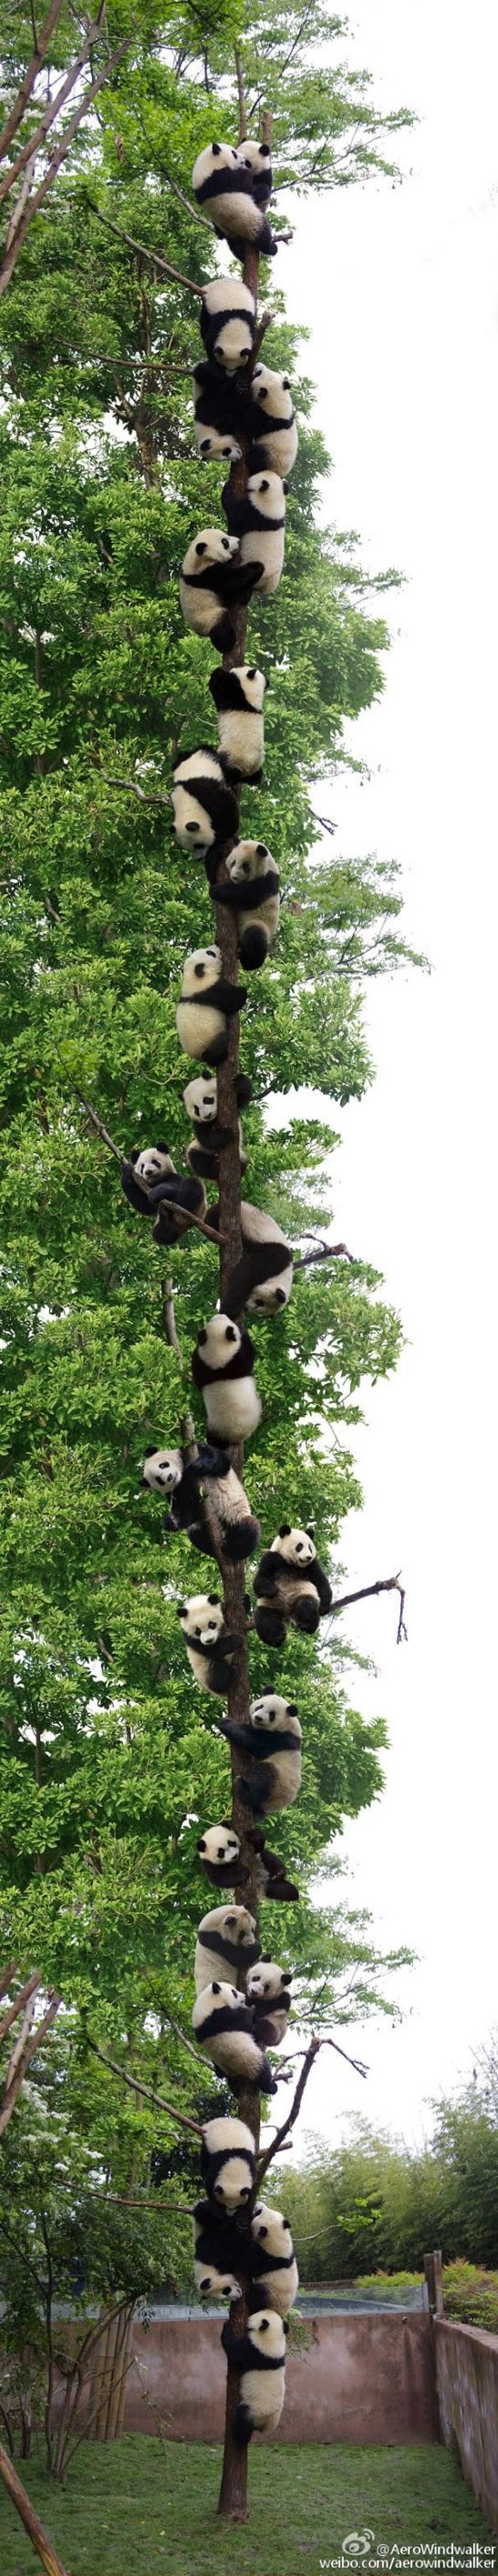 Videli ste u pandov strom?  